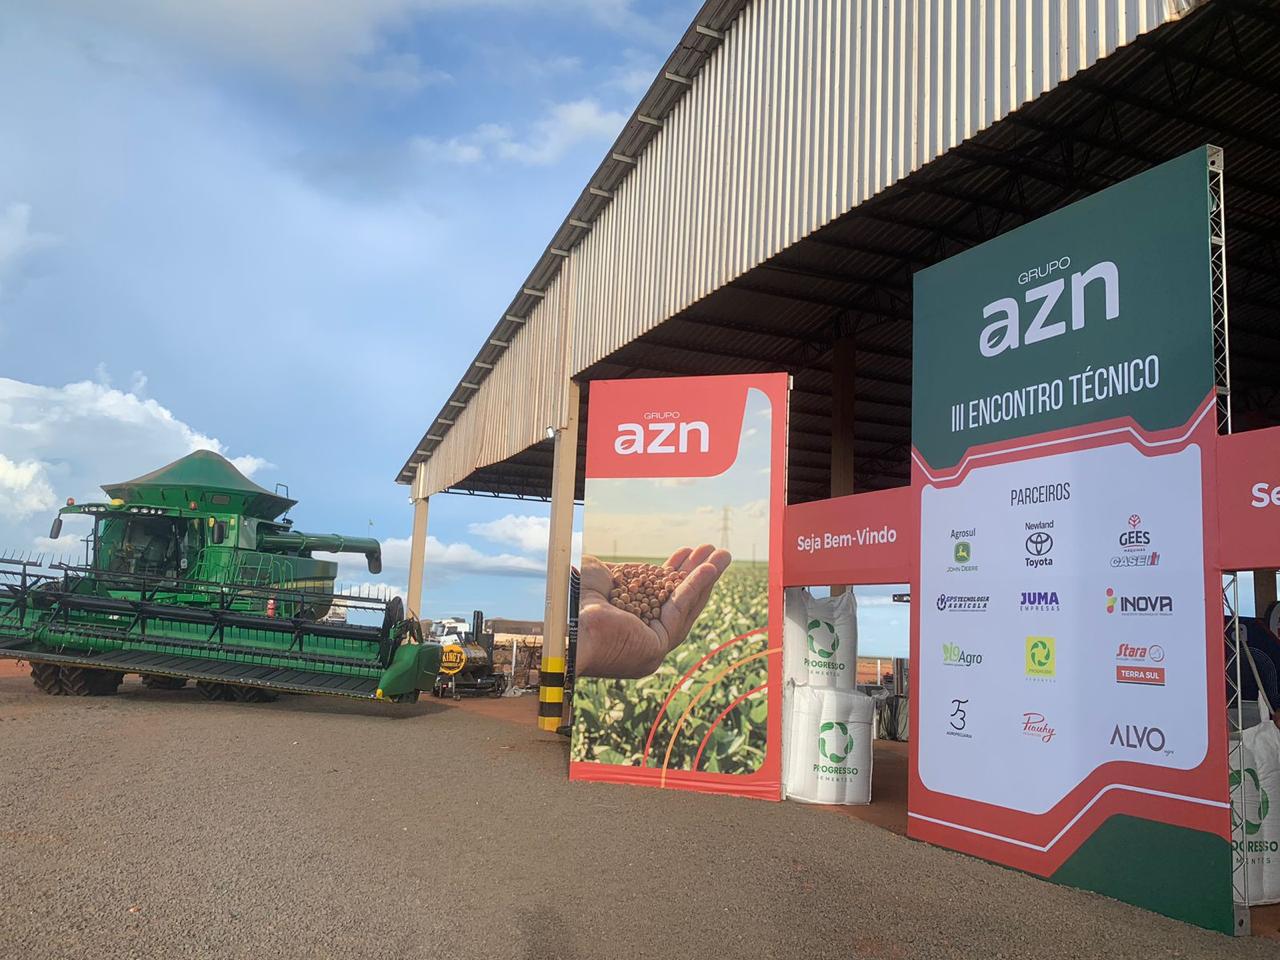 III Encontro Técnico do Grupo AZN destaca inovação e conhecimento no agro